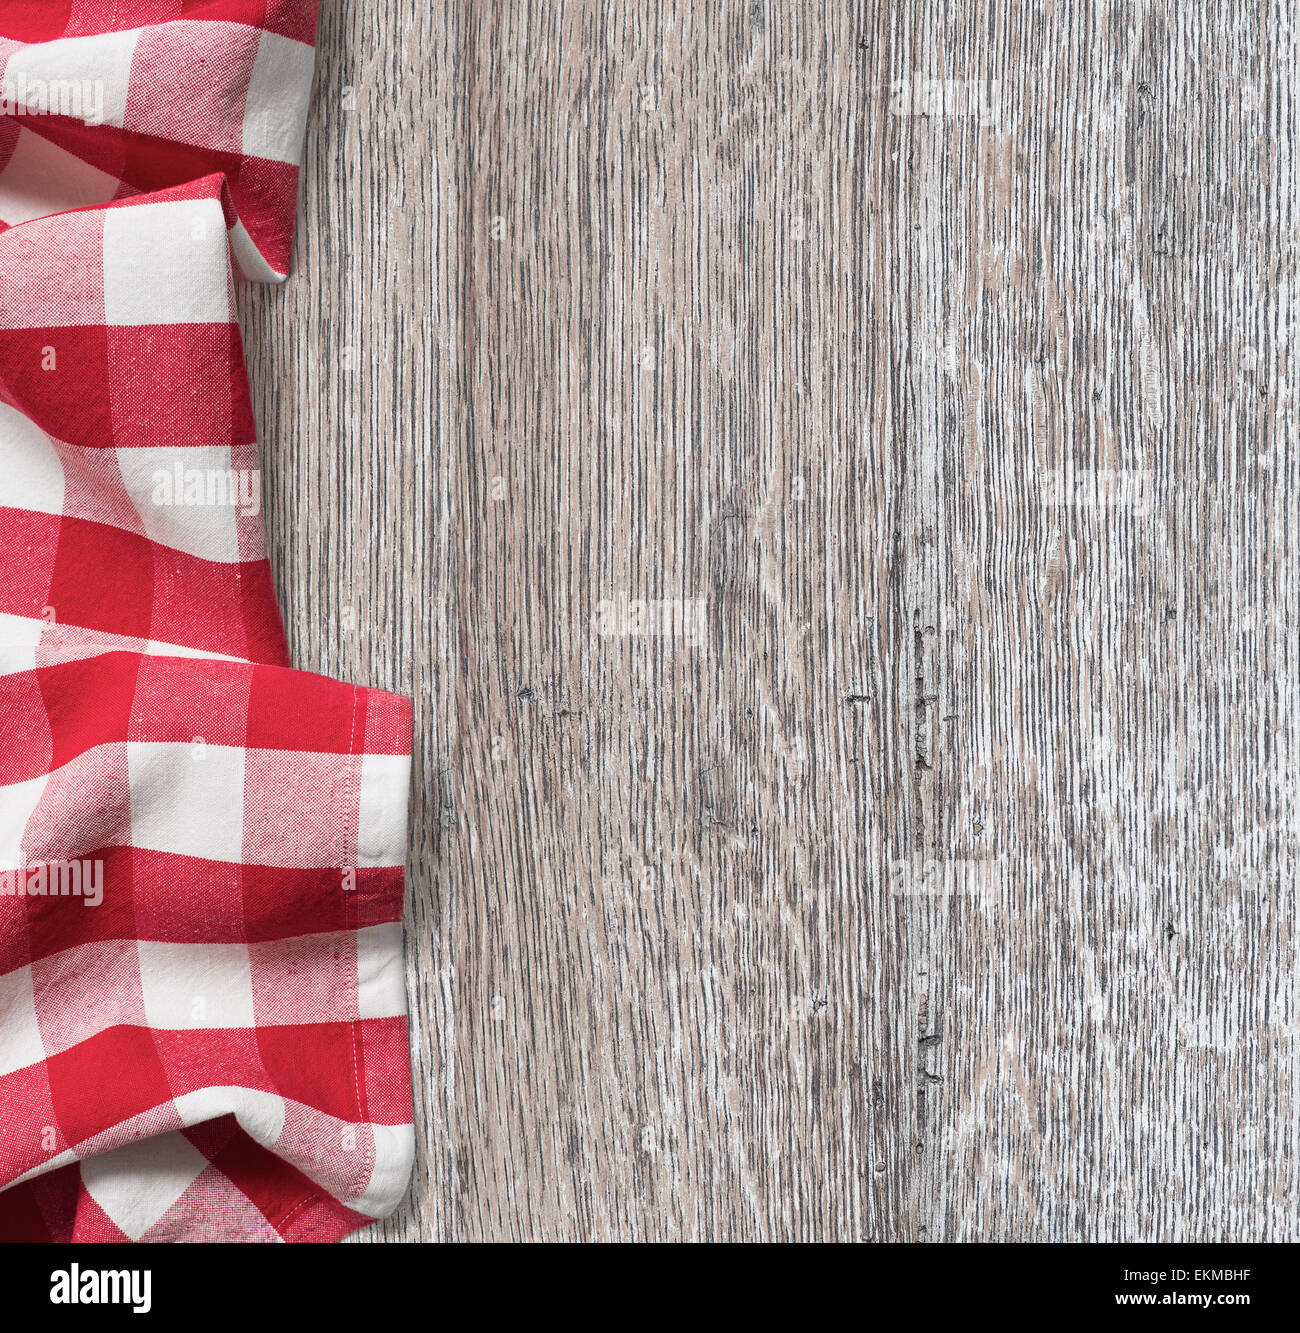 grobe Holz Küchentisch mit roten Picknick Tuch Hintergrund Stockfoto